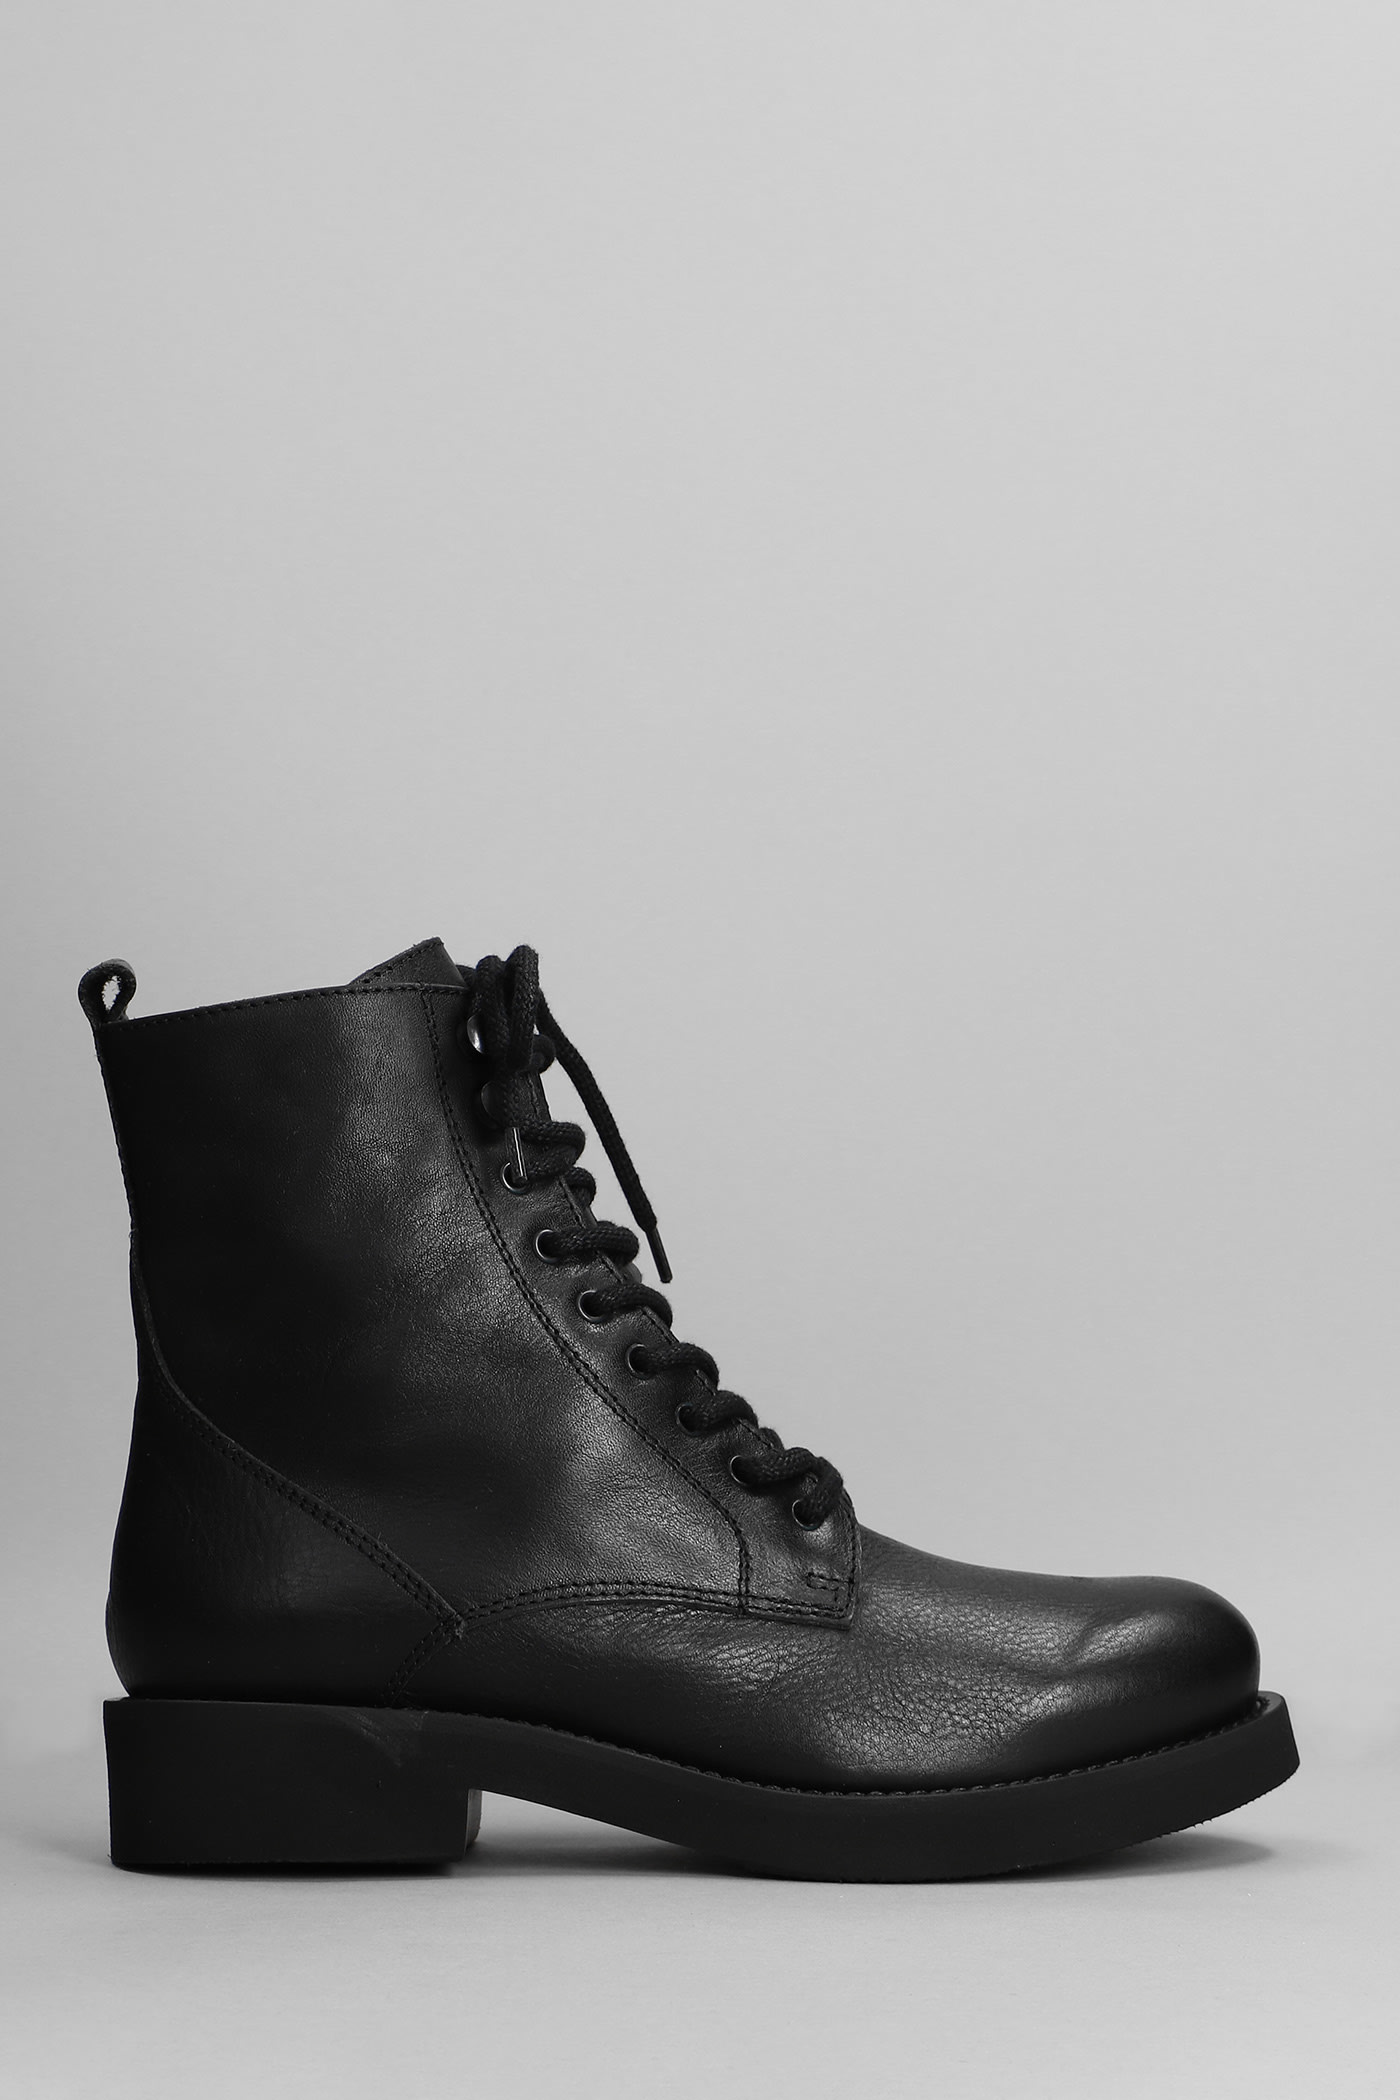 Fabio Rusconi Combat Boots In Black Leather